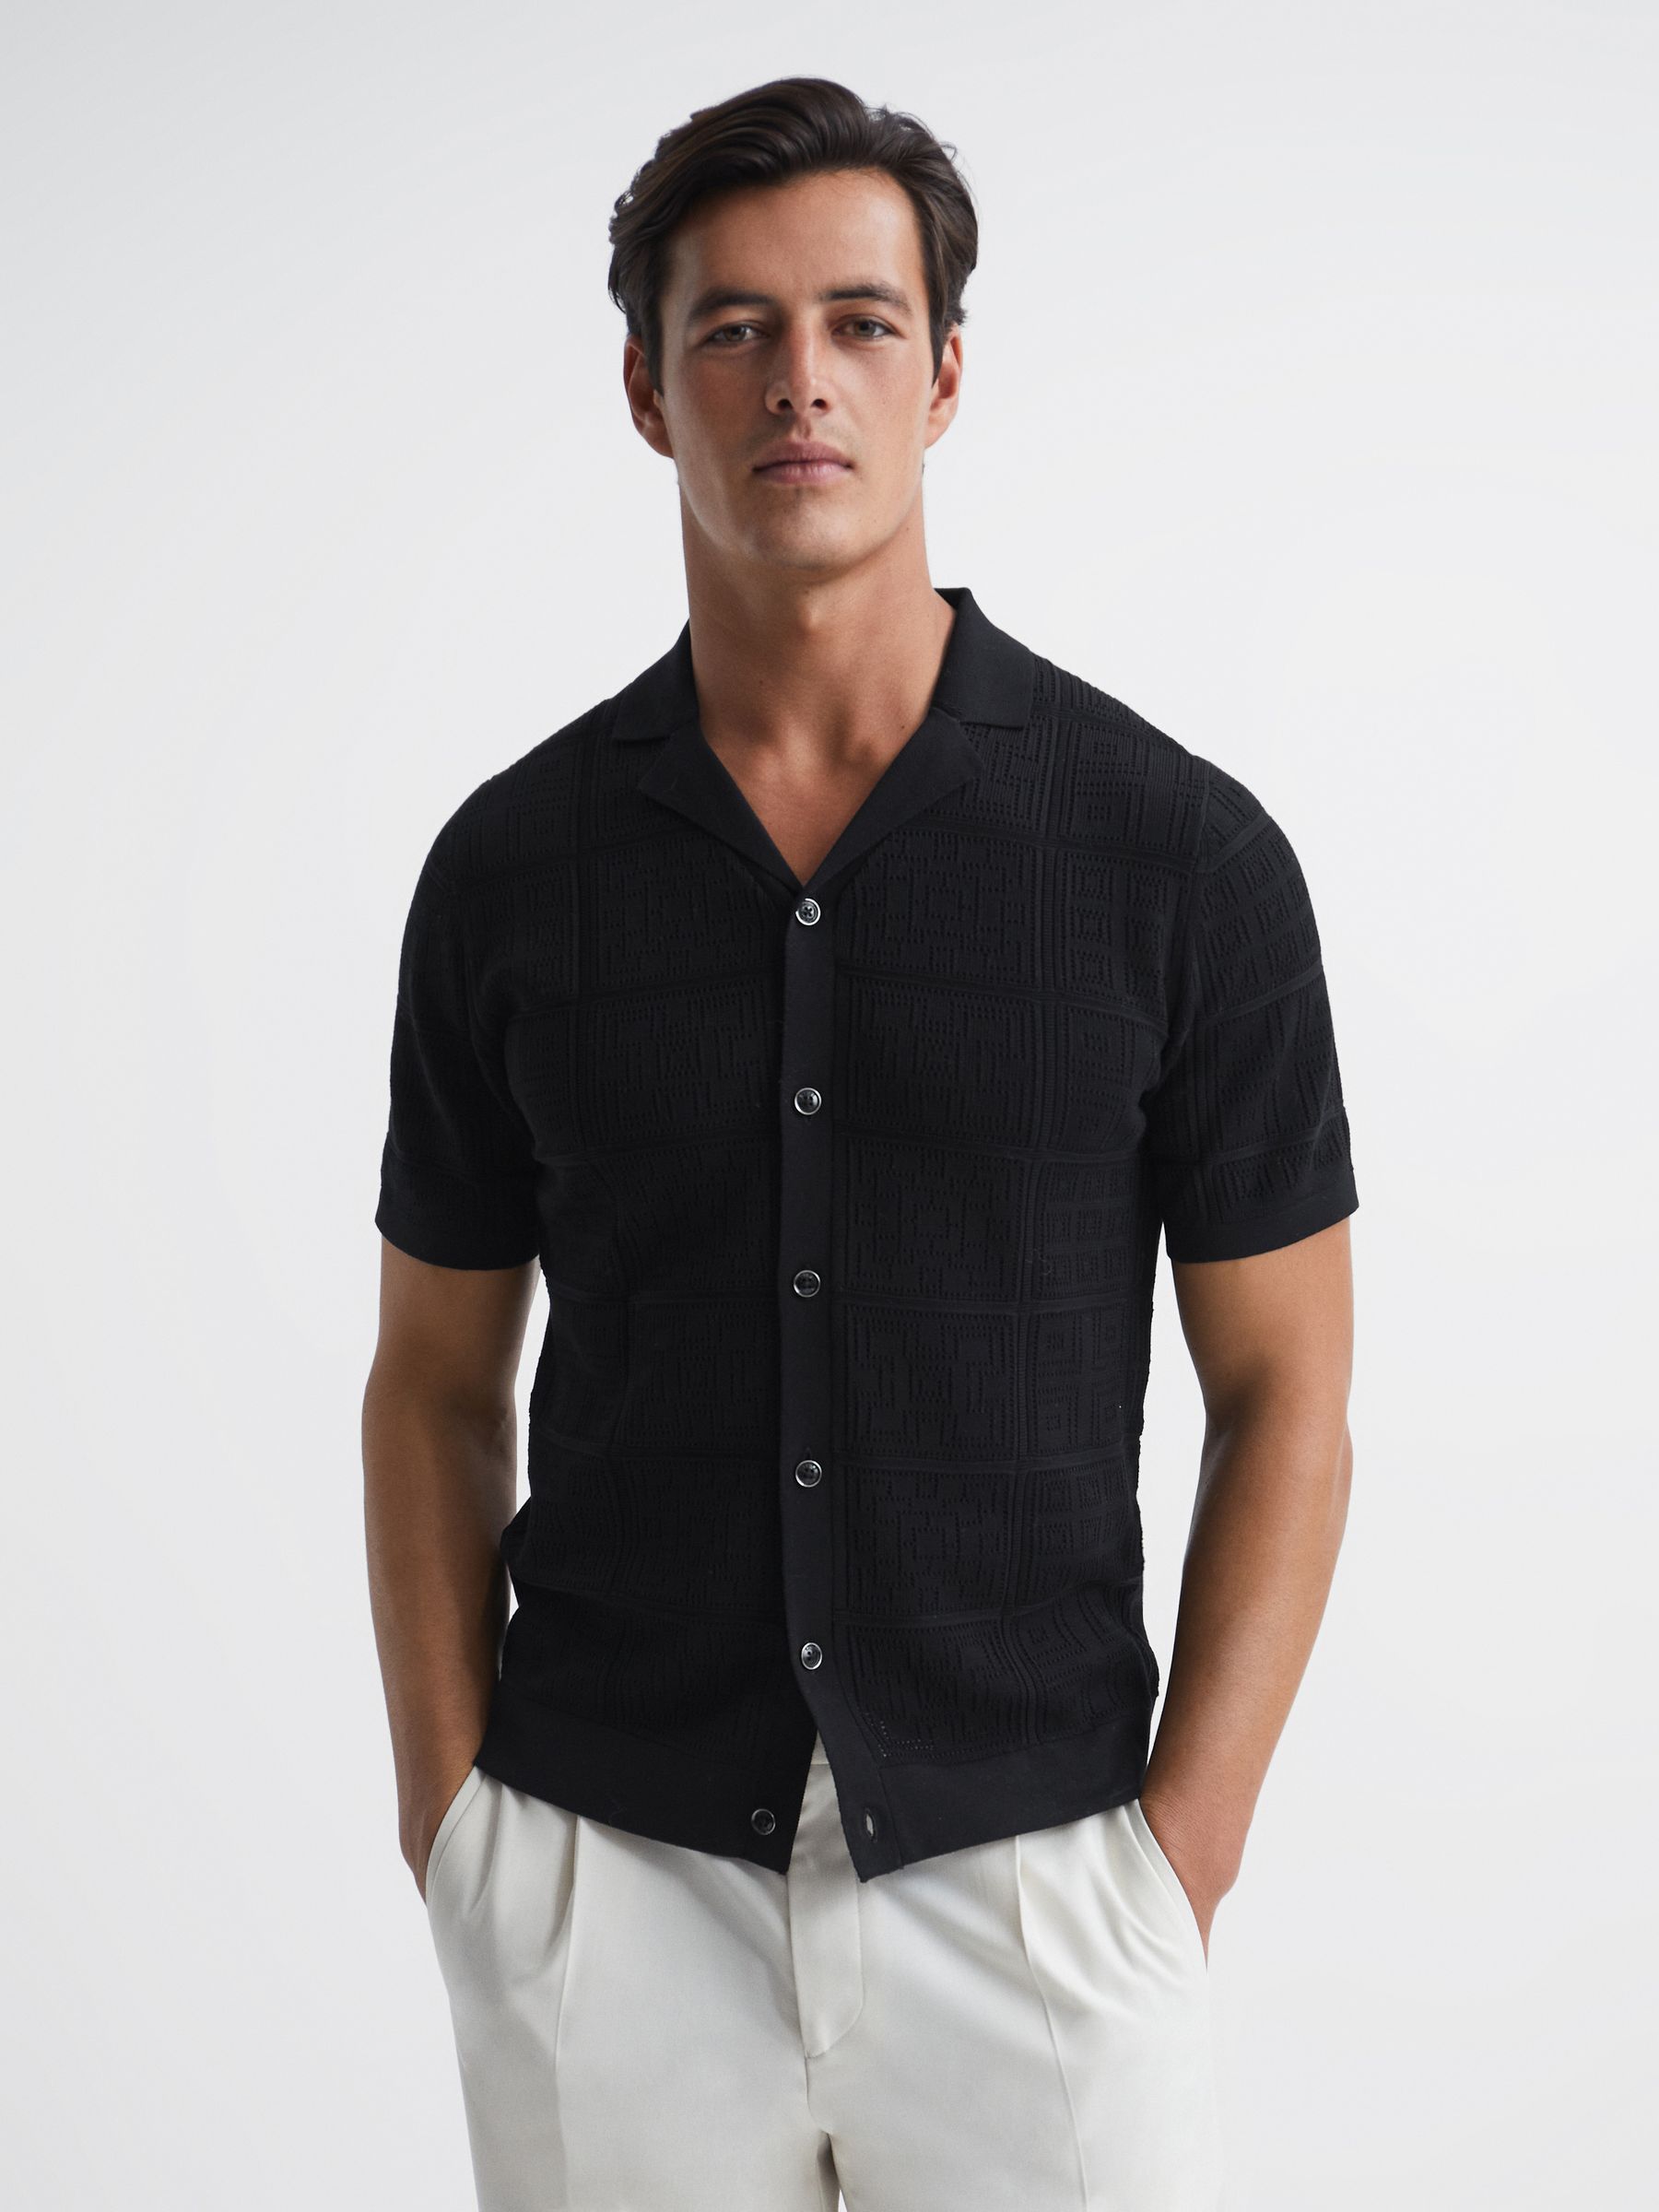 Reiss Amersham Textured Button Through Shirt | REISS USA